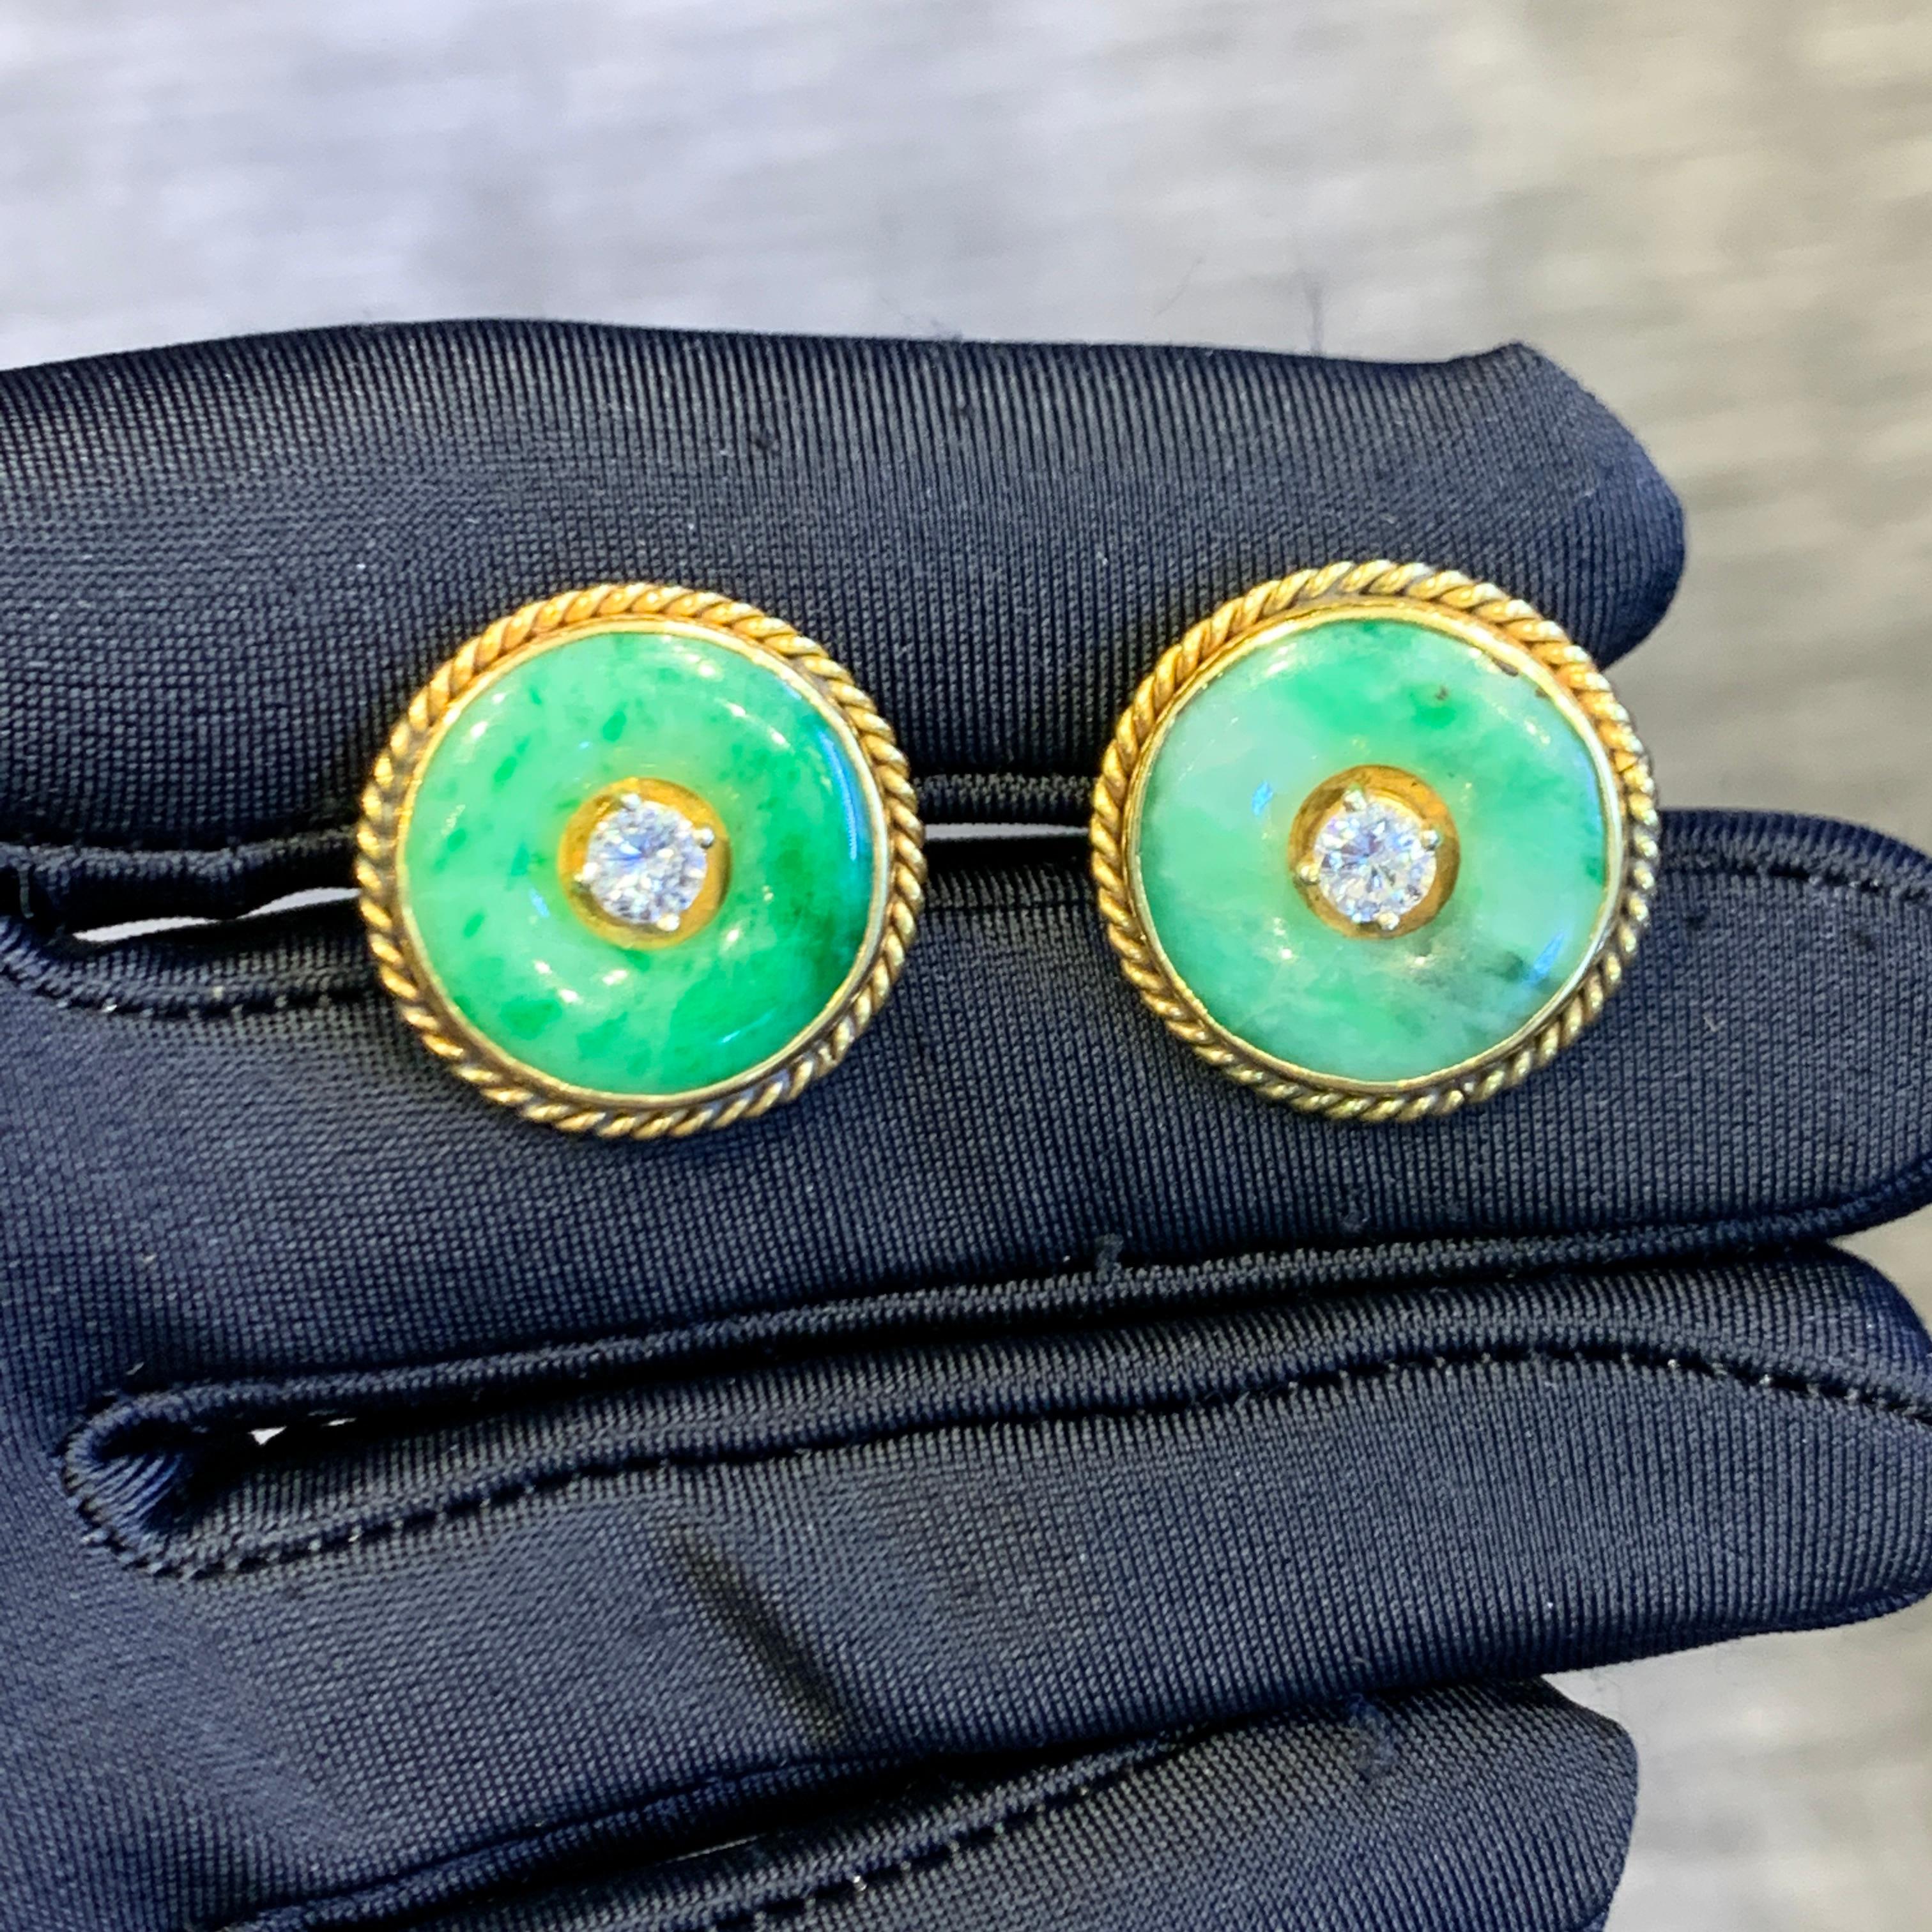 Jade & Diamant-Ohrringe

Ein Paar Ohrringe aus 14-karätigem Gelbgold, jeweils mit einem runden Diamanten in der Mitte, umrahmt von einer runden Jade 

Durchmesser: 0,82